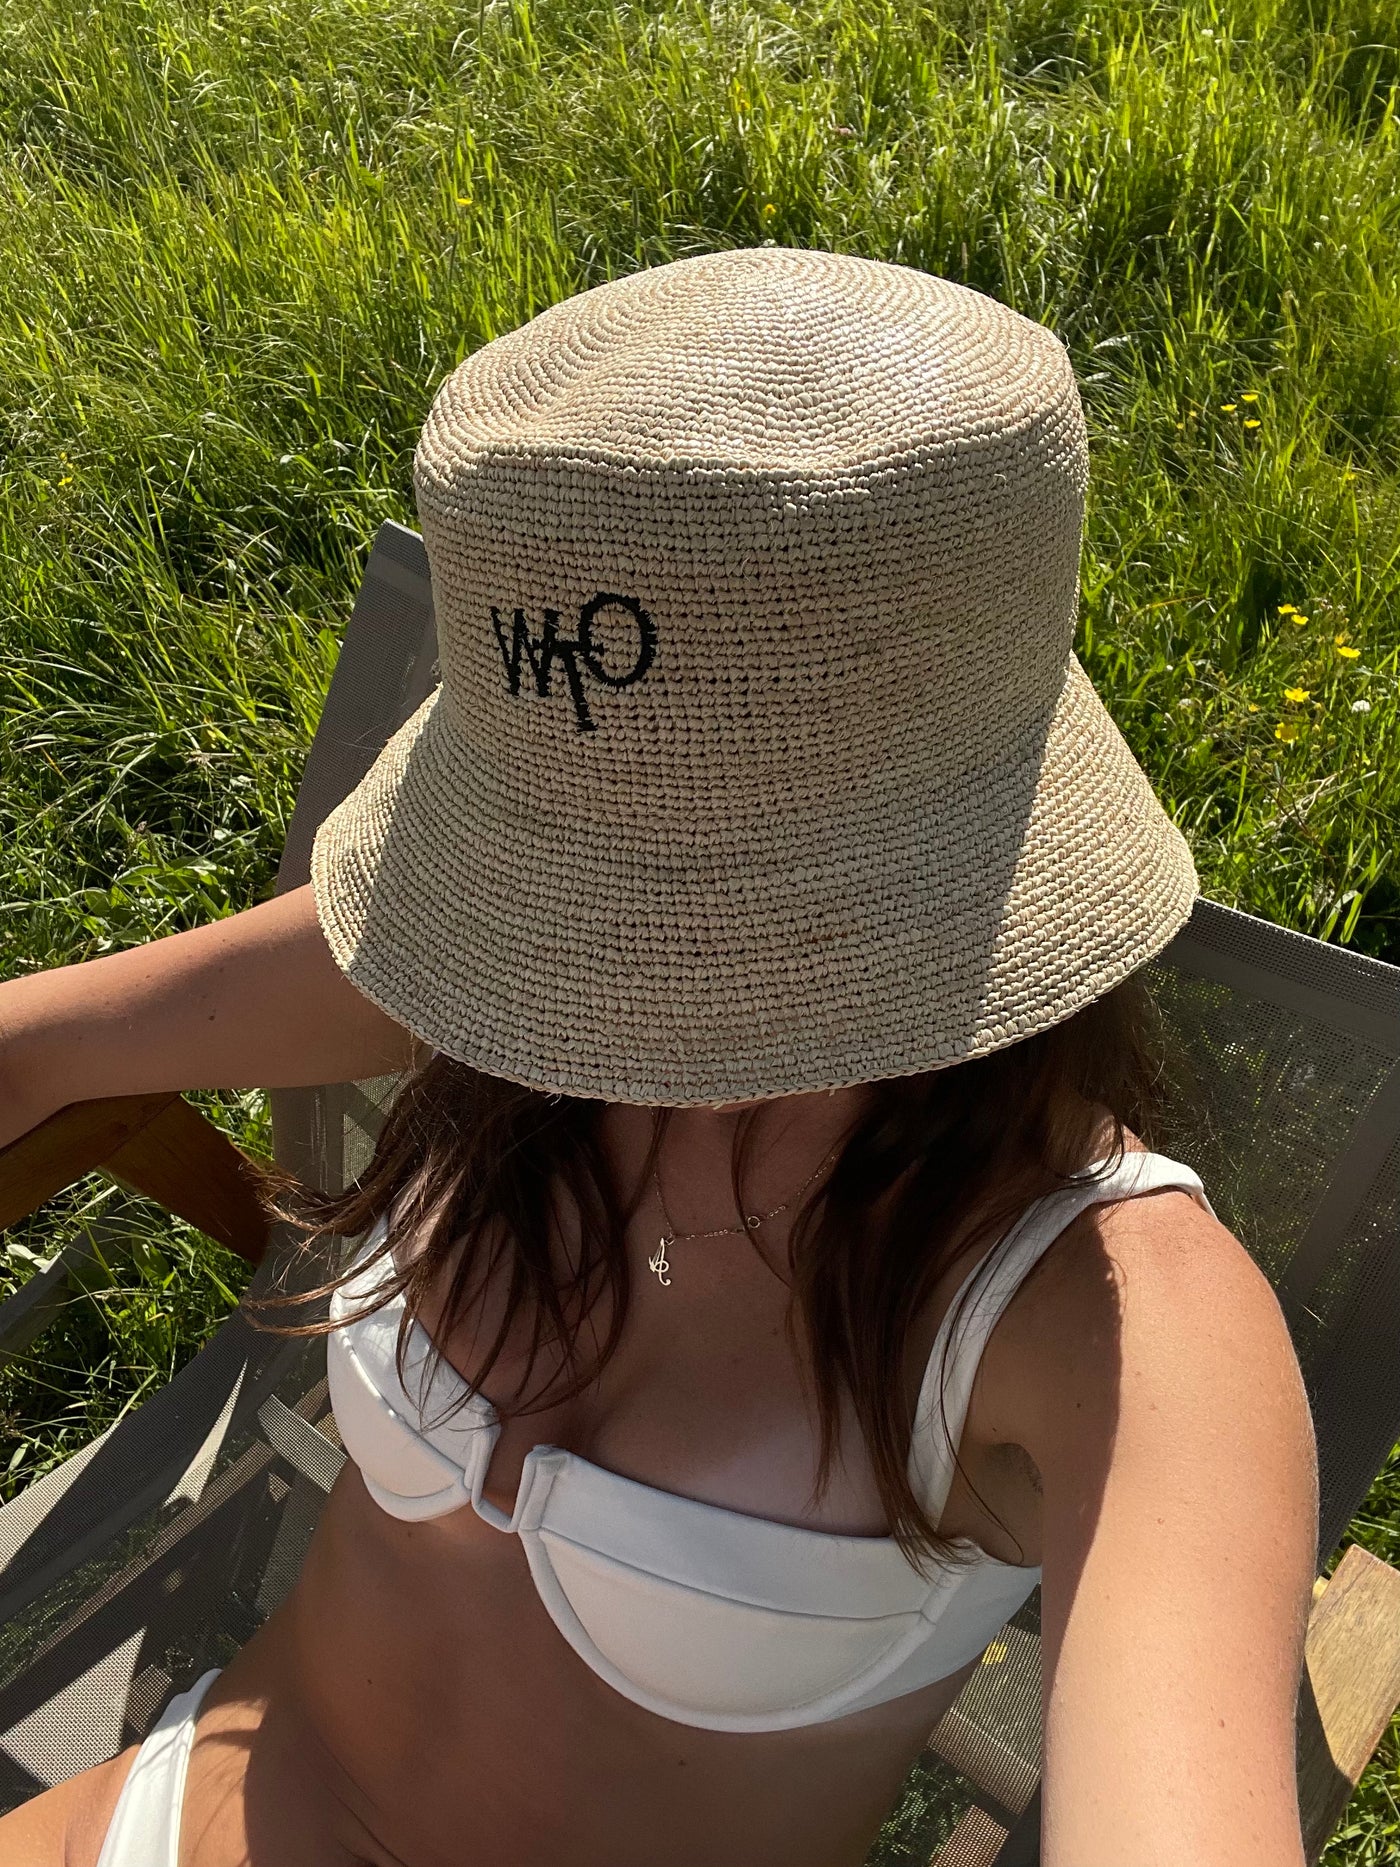 OTW Woven Sun Hat